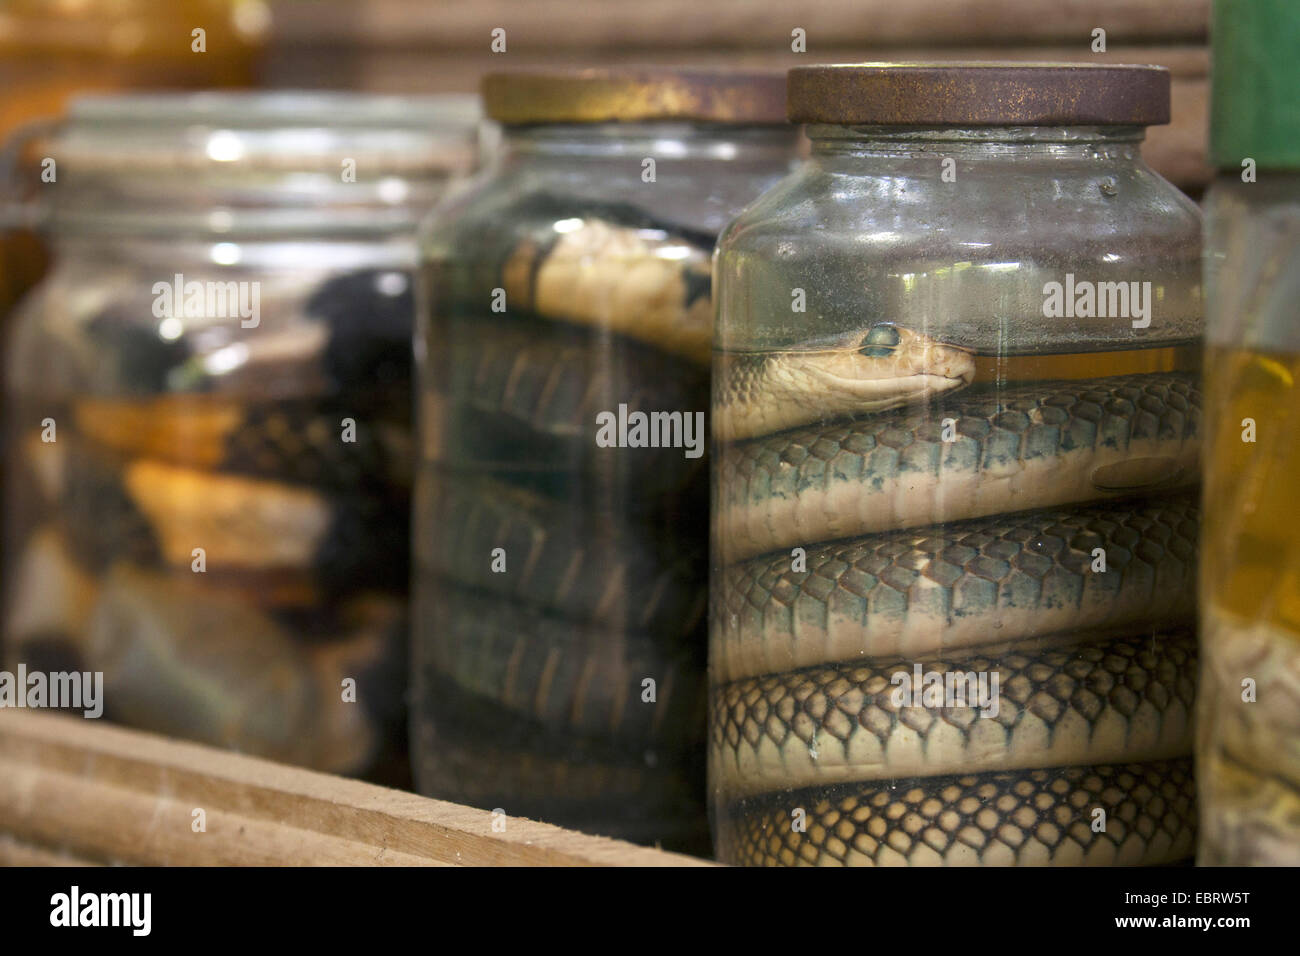 Yellow-bellied Couleuvre obscure Couleuvre obscure de l'Indochinois, (Ptyas korros), les conserves de serpents dans une solution de formaldéhyde, Thailande, Mae Sa Ferme aux serpents, Chiang Mai Banque D'Images